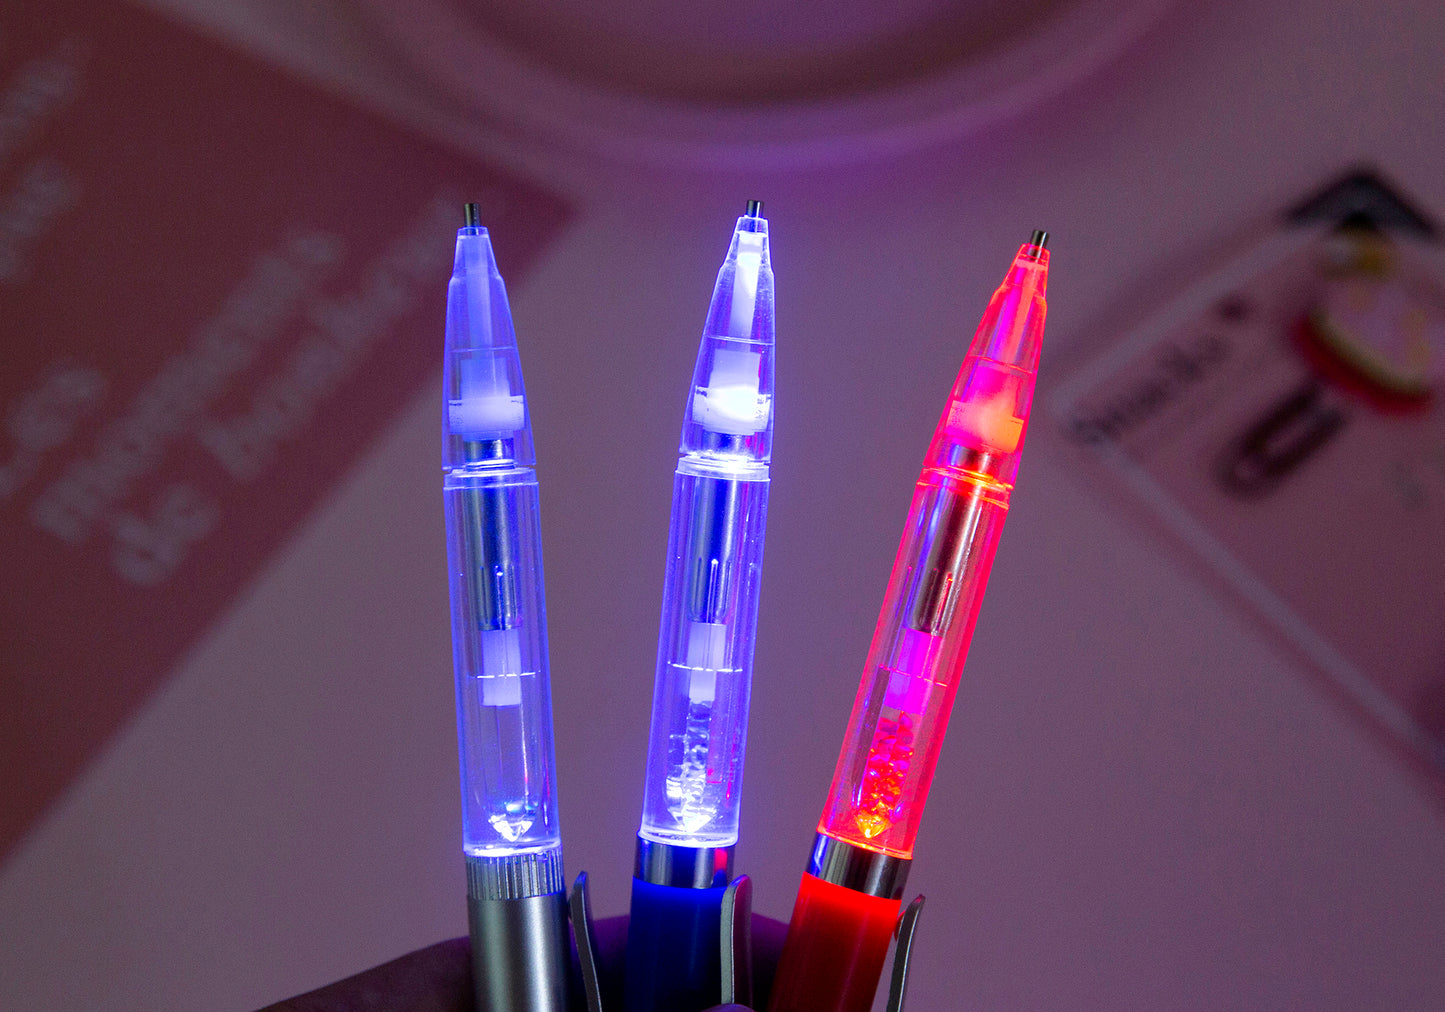 1 DIY diamond drawing point drill pen | luminous tool